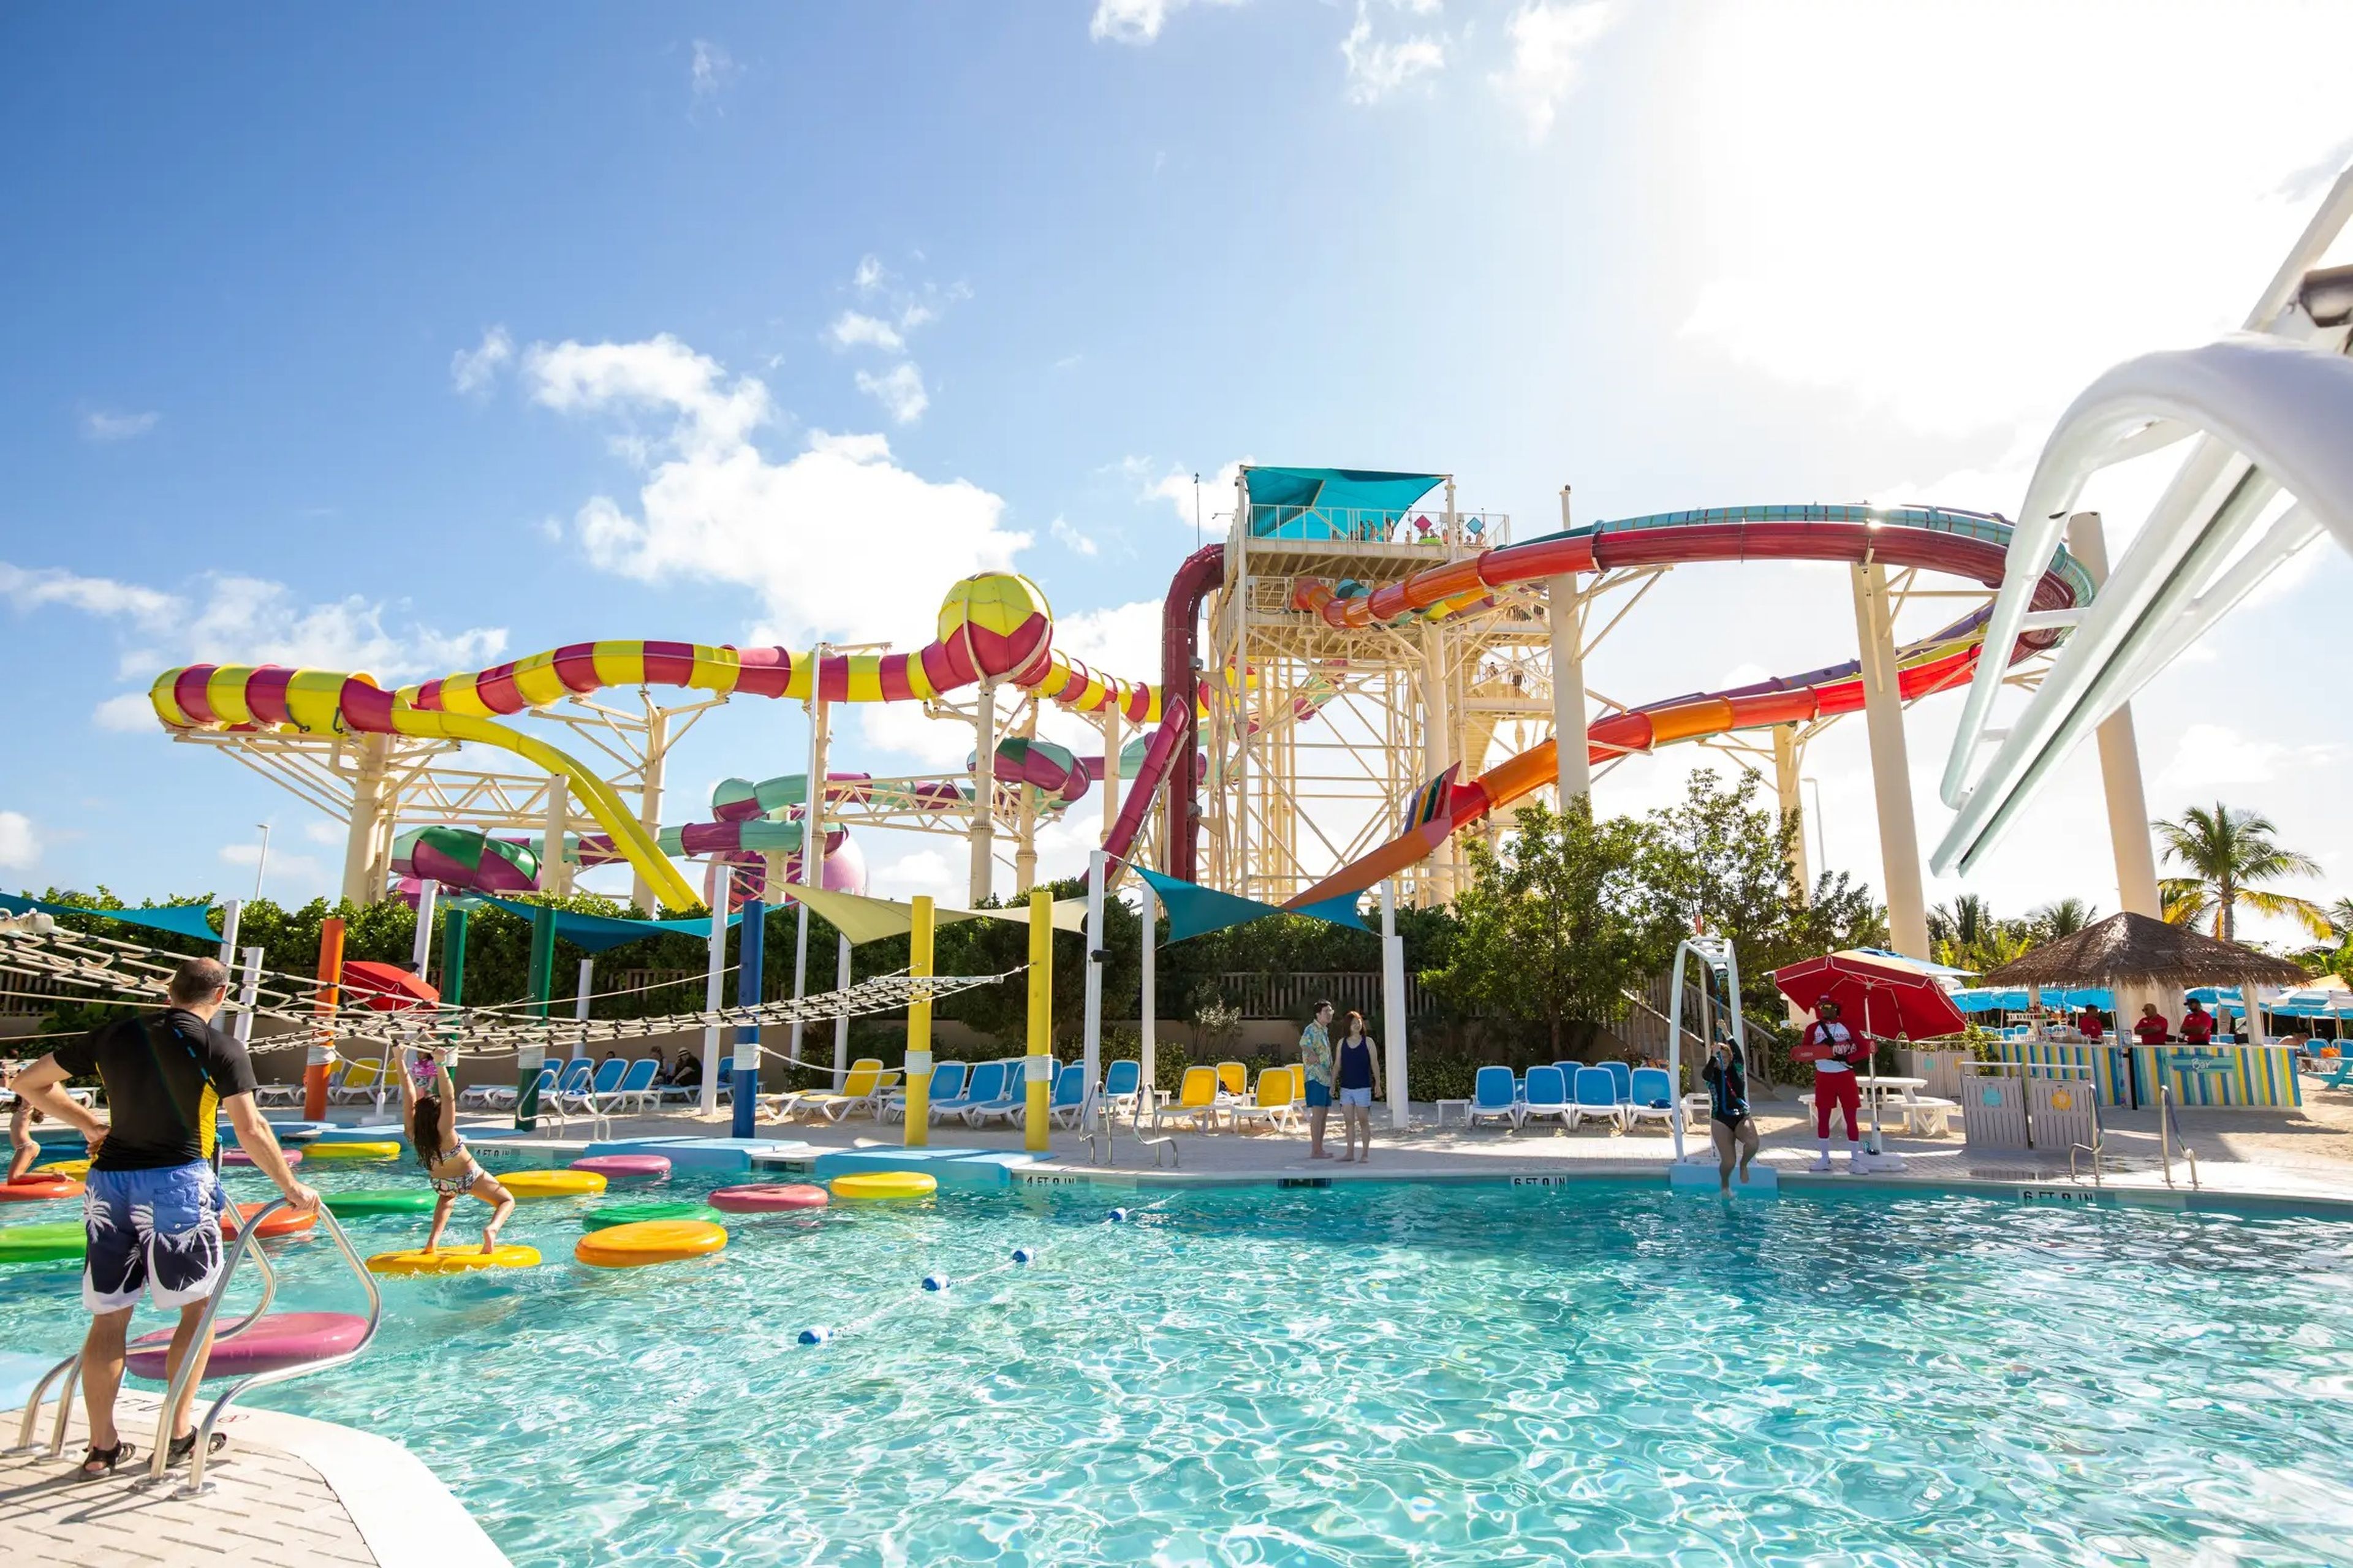 El Thrill Waterpark de Perfect Day at CocoCa cuenta con servicios como una piscina de olas y 14 toboganes acuáticos.